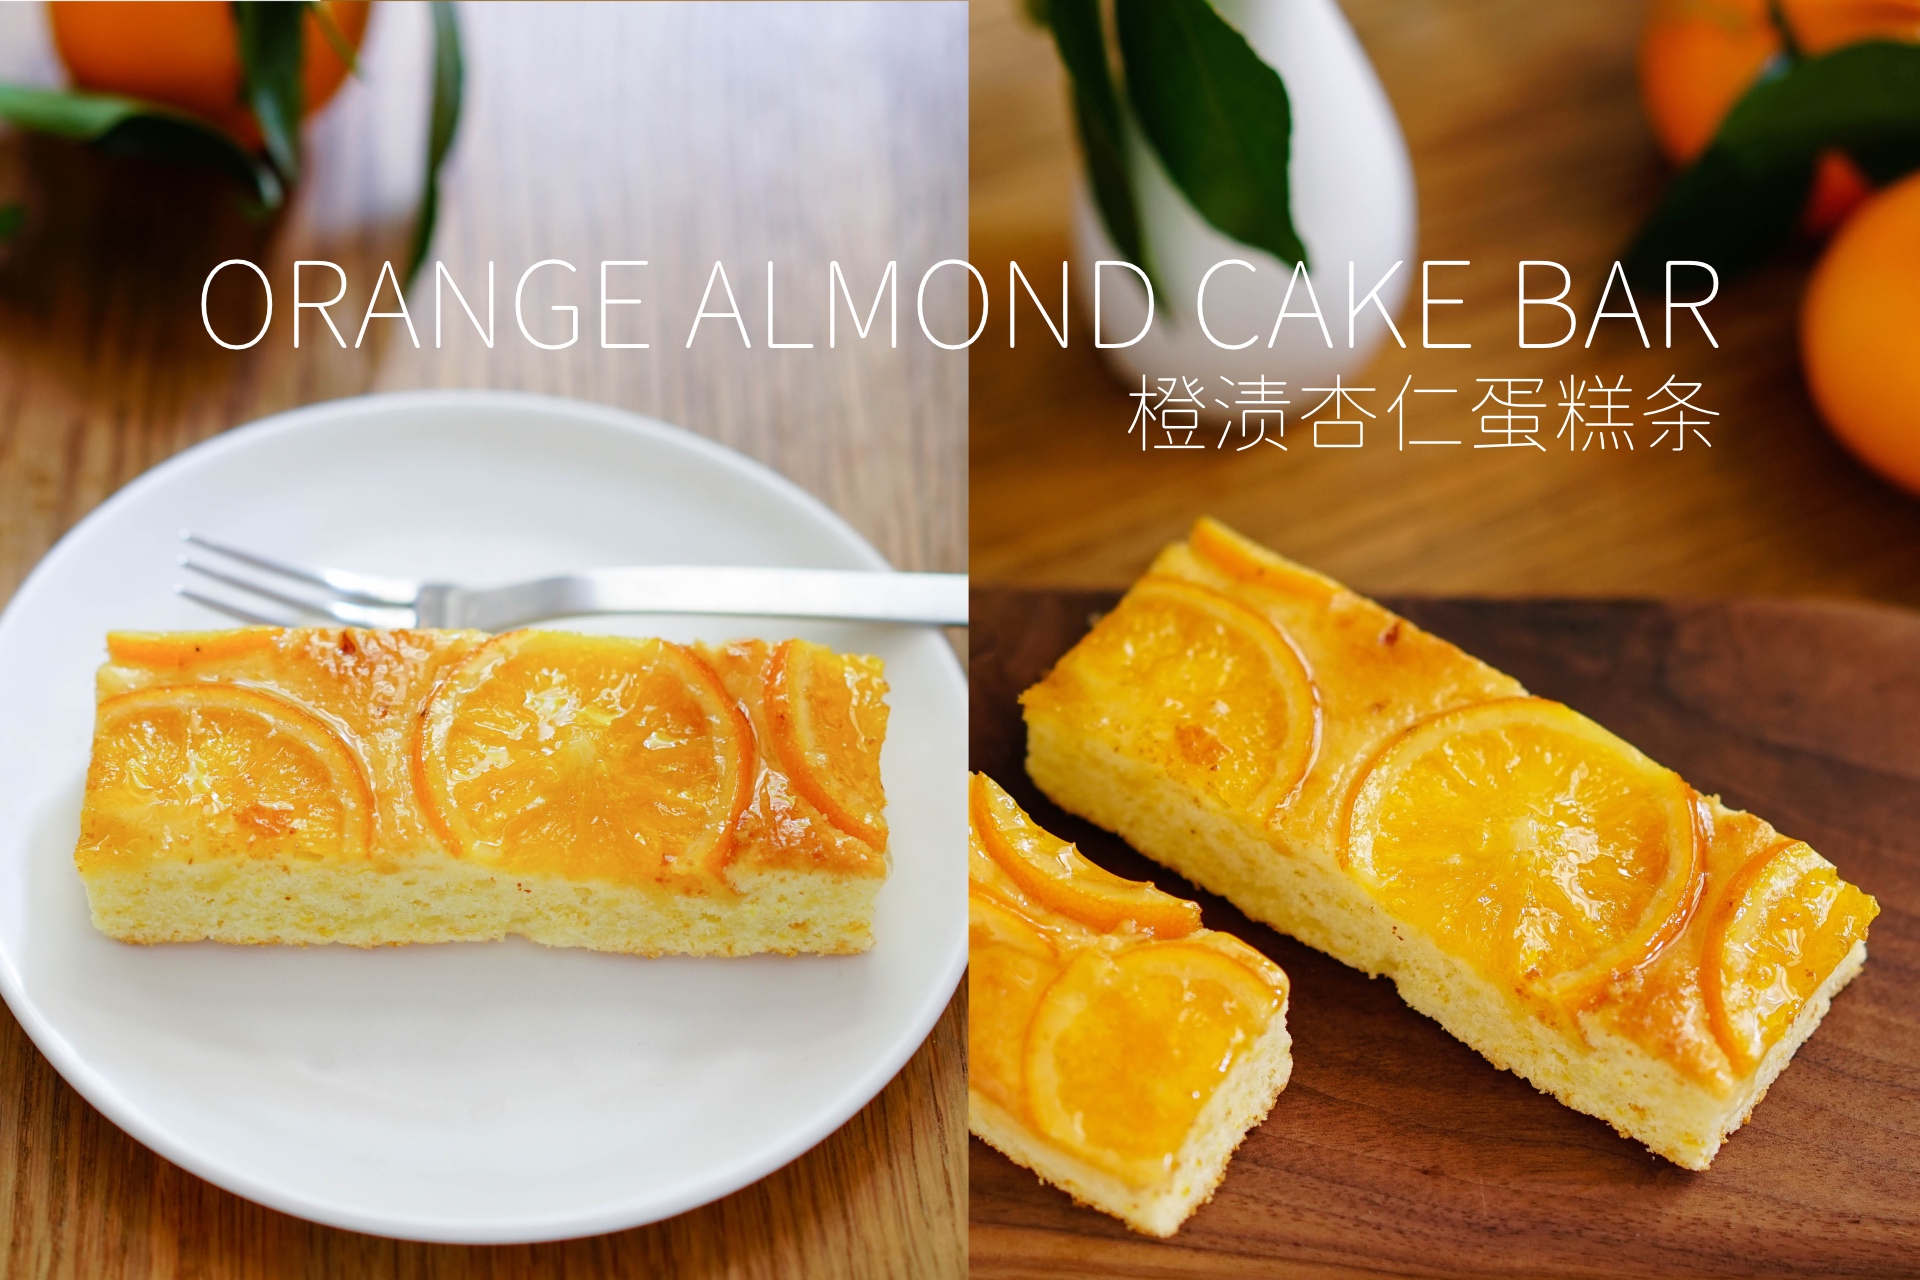 松润喷香橙渍杏仁蛋糕条——日本中島大祥堂蛋糕礼盒第二弹的做法